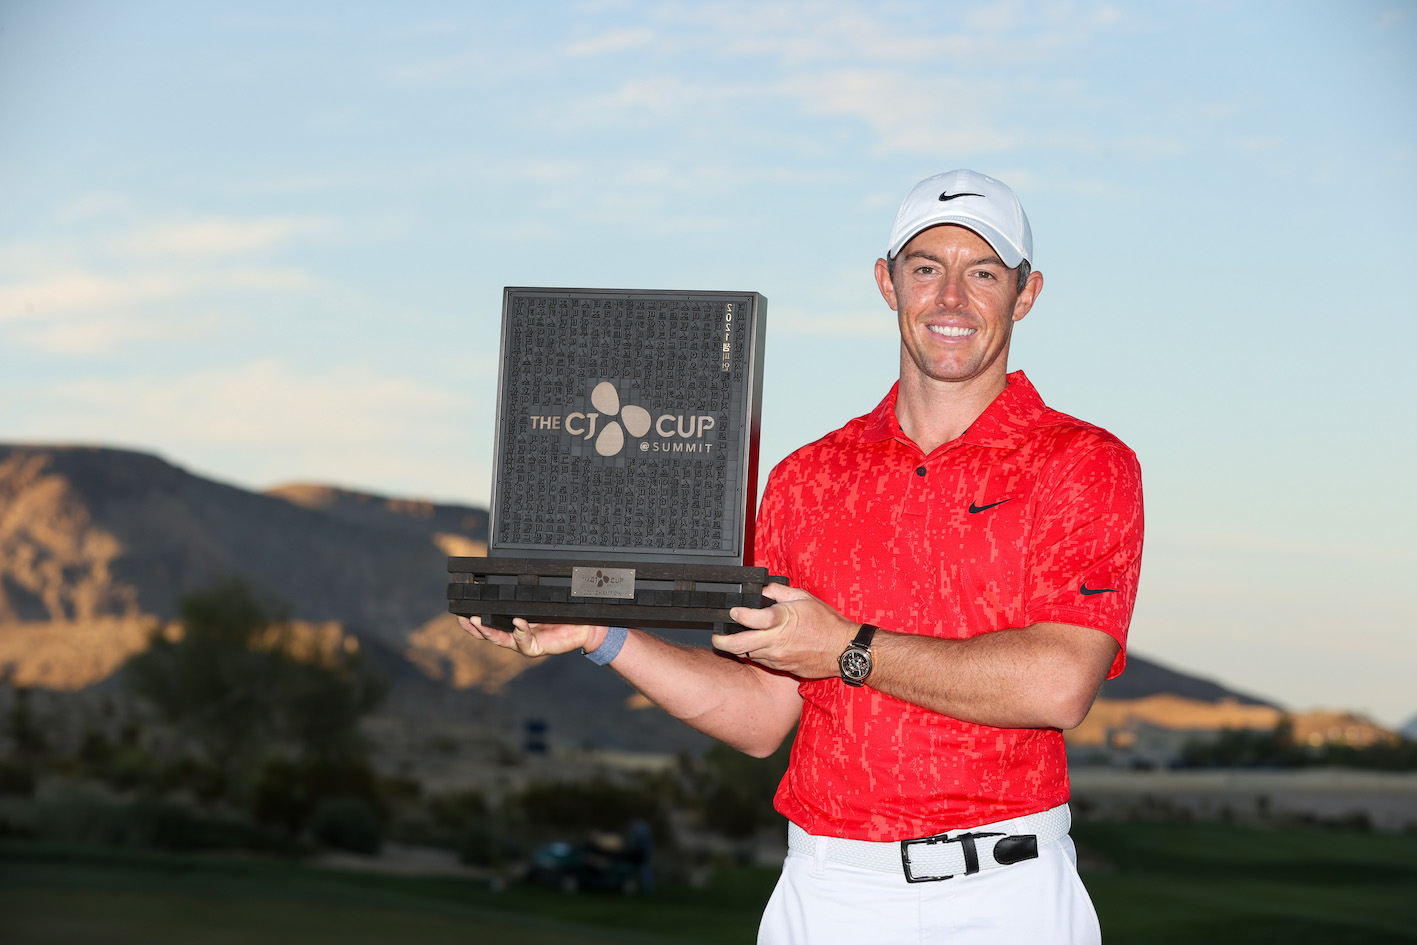 McIlroy promete "ser yo" después de ganar el vigésimo título del PGA Tour en la CJ Cup - Noticias de golf |  Revista de golf